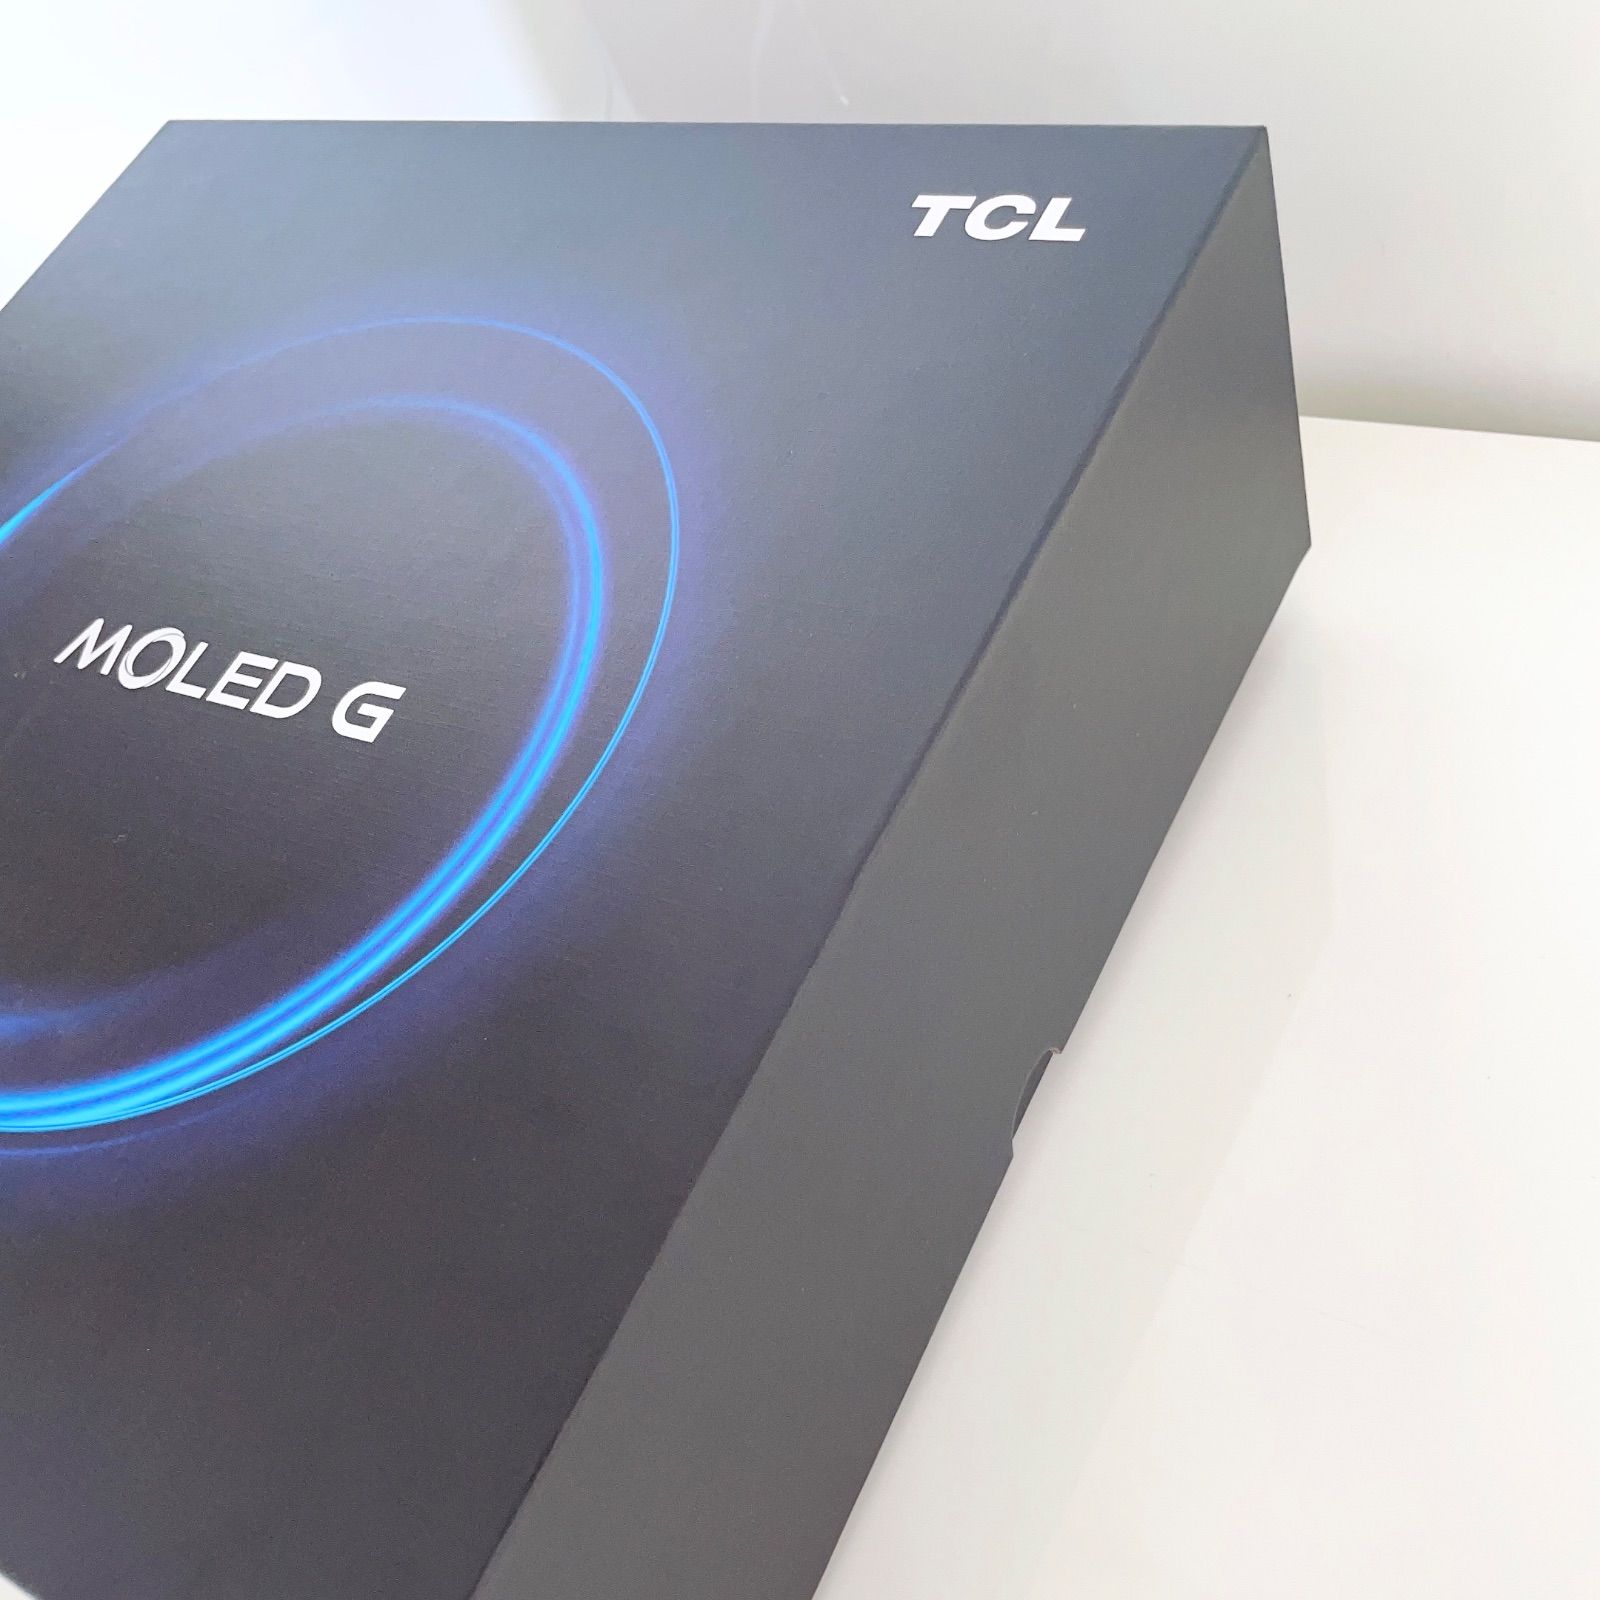 限定ラスト1台 新品TCL VR MOLED G + スマートフォン T782P-